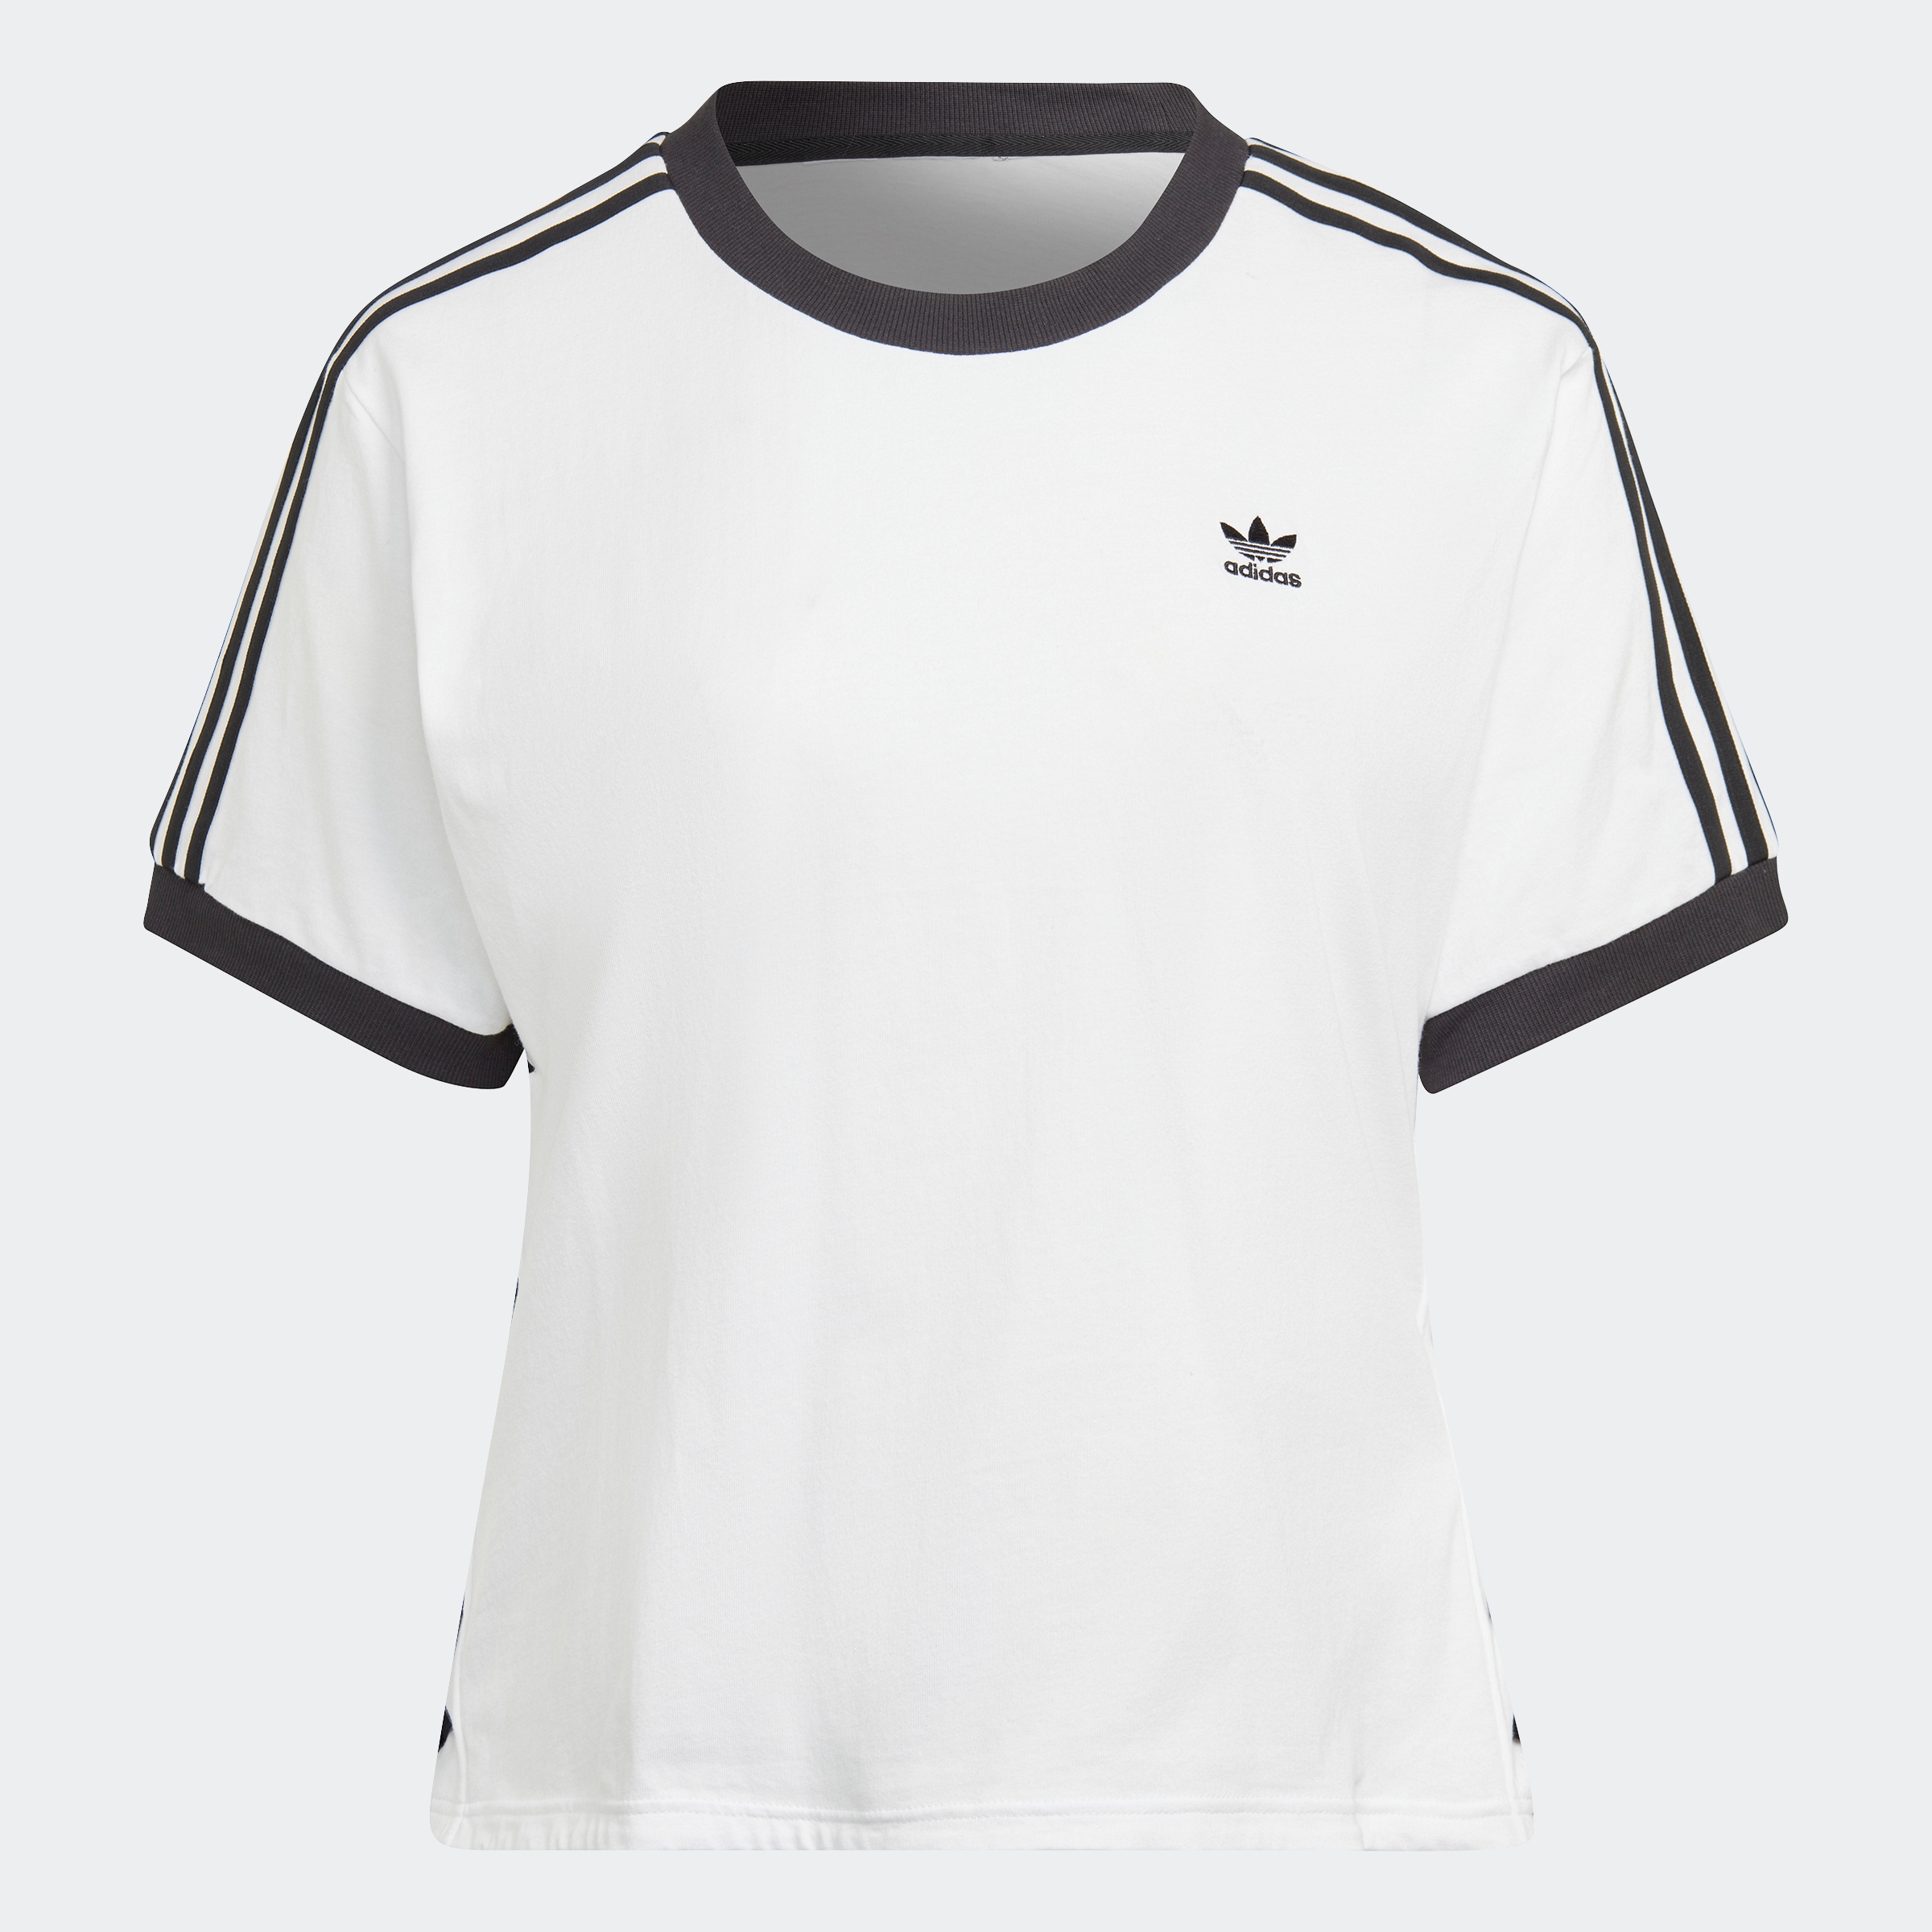 LACED ♕ ORIGINAL versandkostenfrei adidas »ALWAYS – GRÖSSEN« auf Originals T-Shirt GROSSE